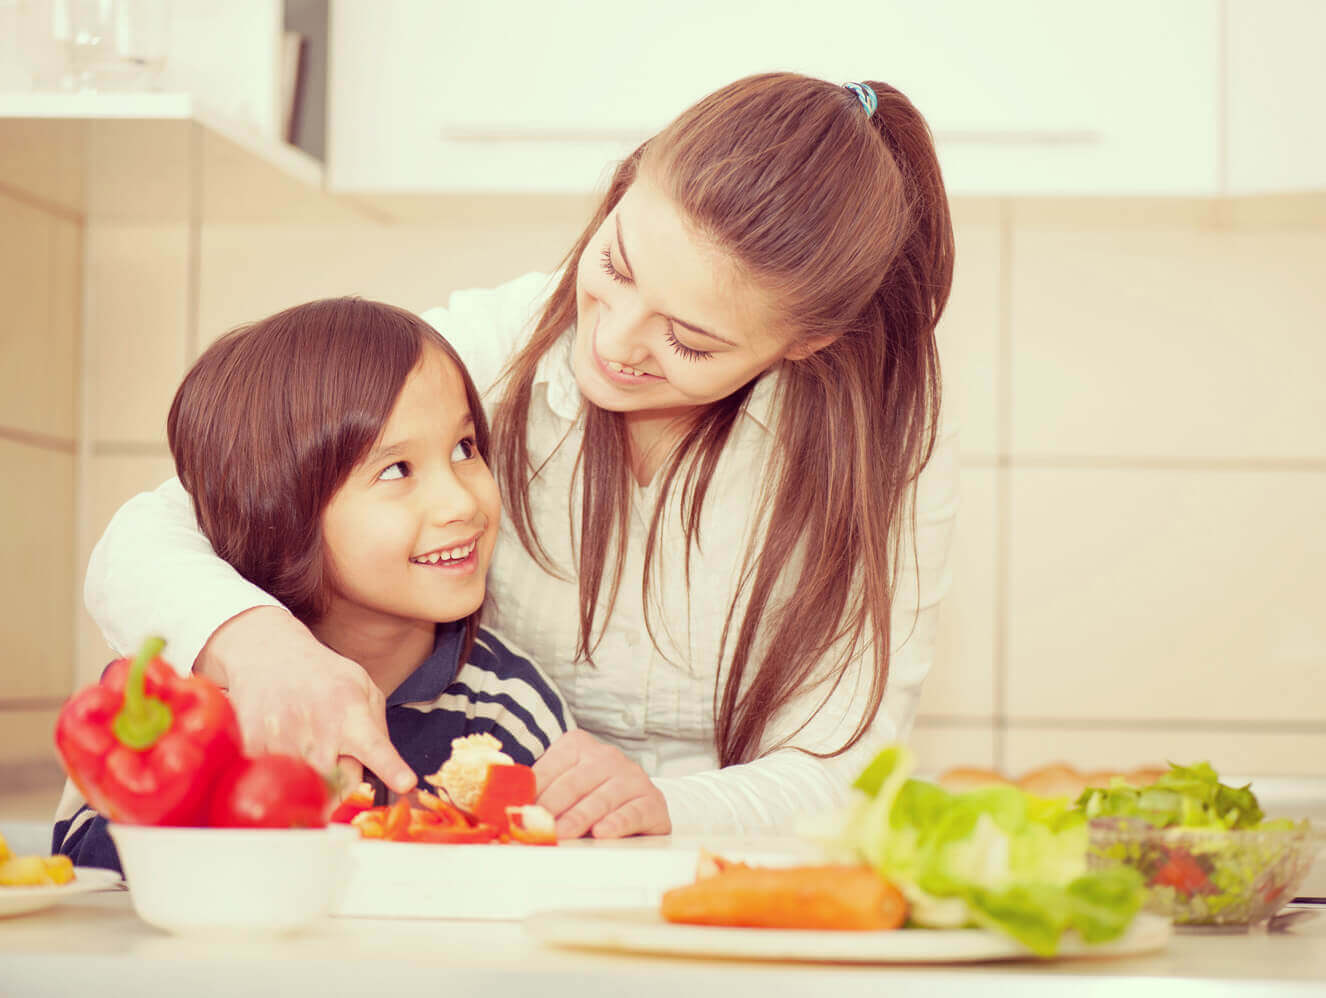 أطعمة مهمة لنمو وتطور أطفالك: دور الغذاء في بناء الصحة والقدرات العقلية والجسدية